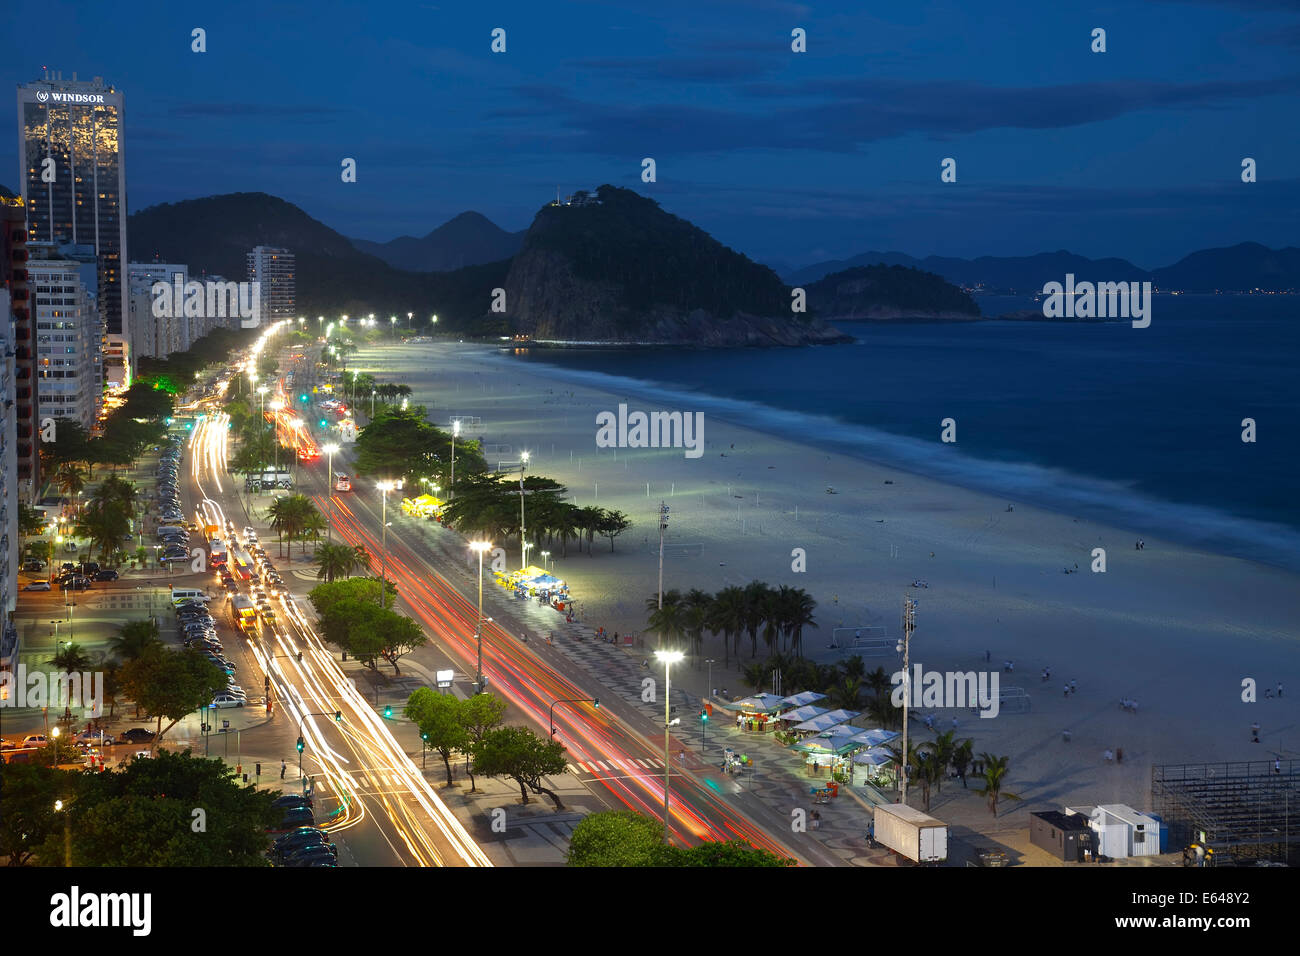 La plage de Copacabana, et de l'Avenue Atlantica, nuit à Copacabana, Rio de Janeiro, Brésil Banque D'Images